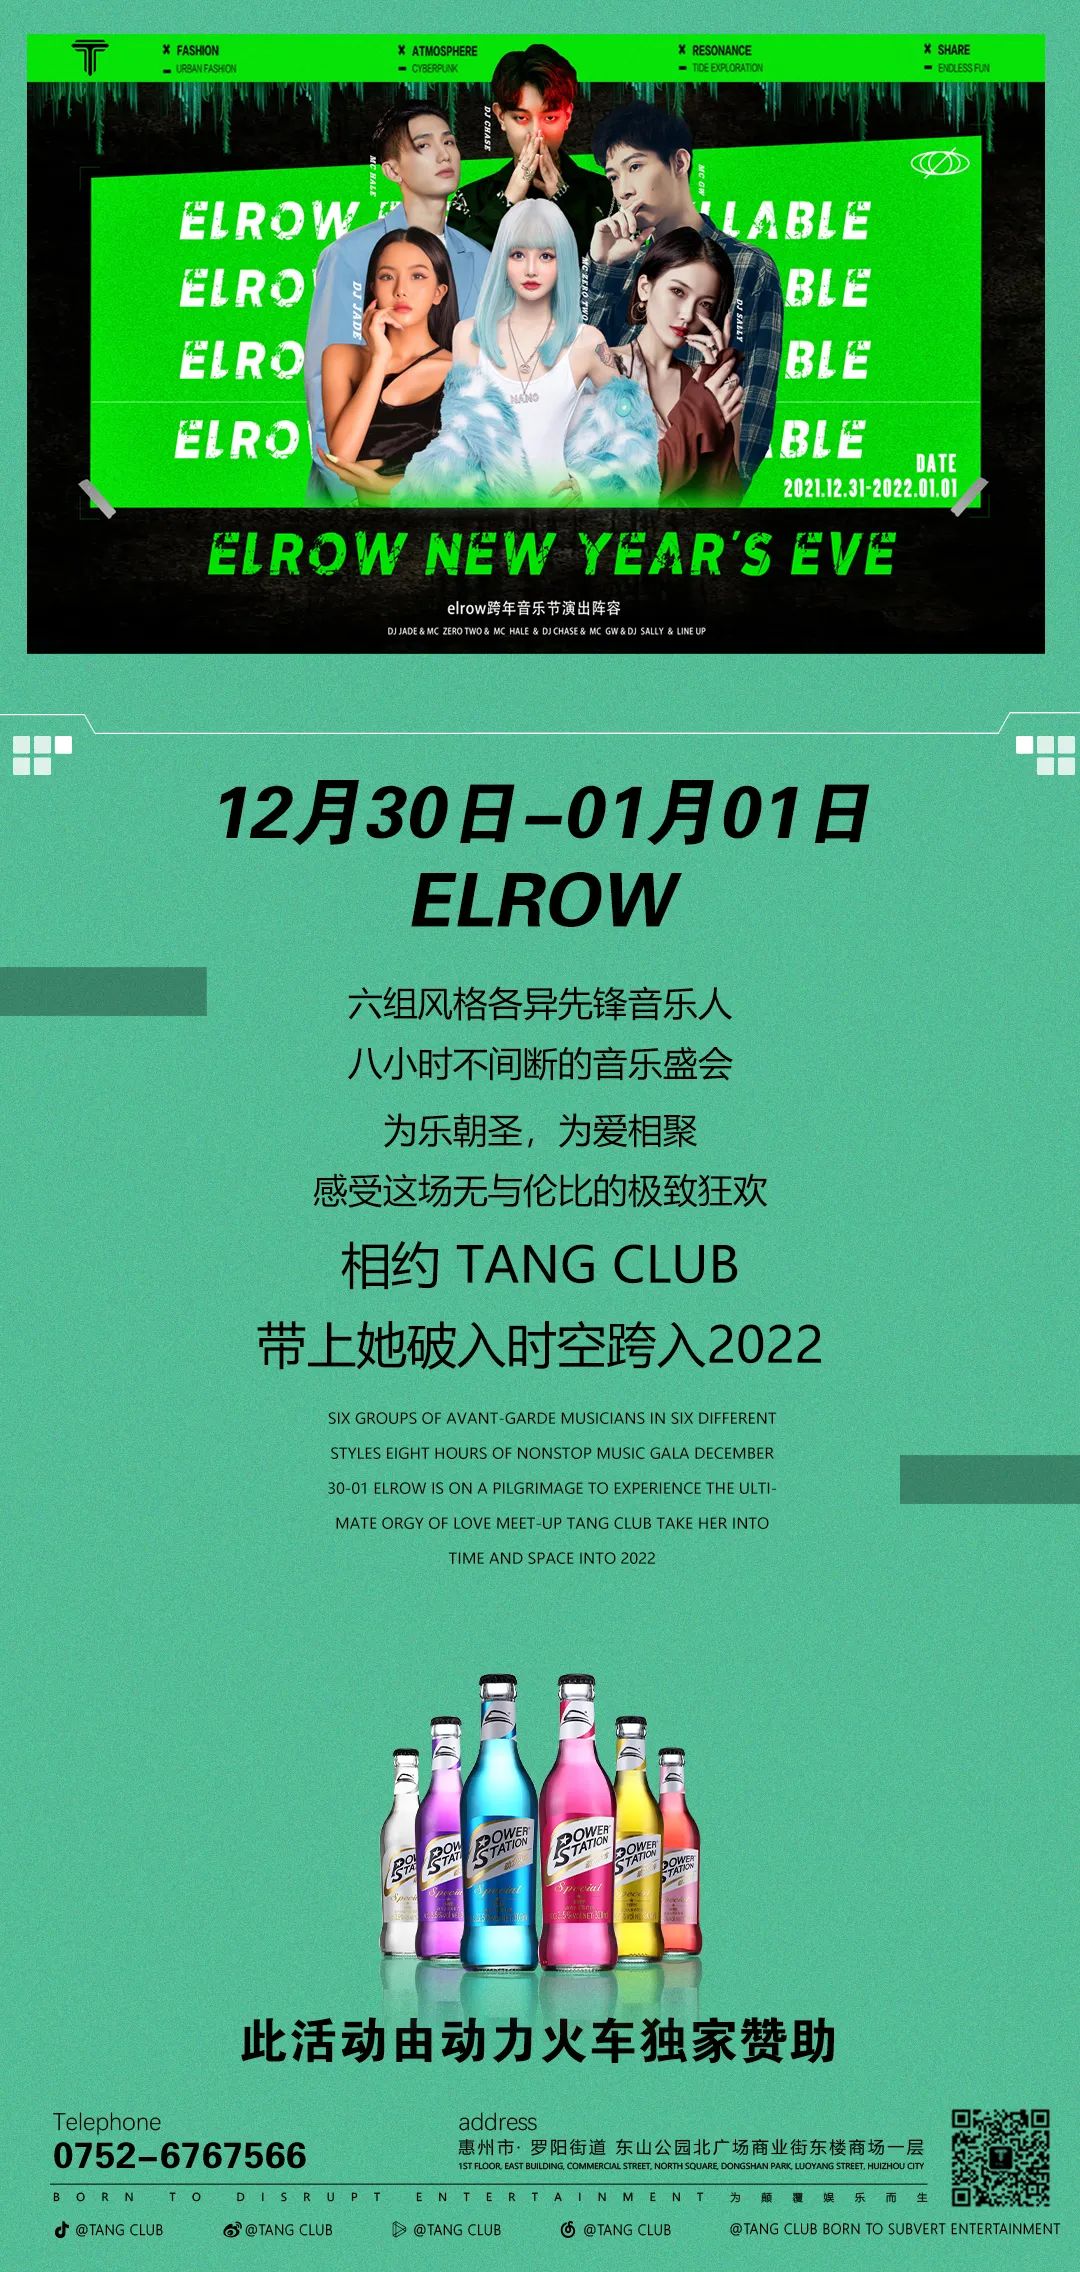 风靡全球的elrow派对啥样？这个跨年Tang带你了解一下 I 即刻上车 elrow 沉浸式跨年音乐节-博罗TANG CLUB/TANG酒吧